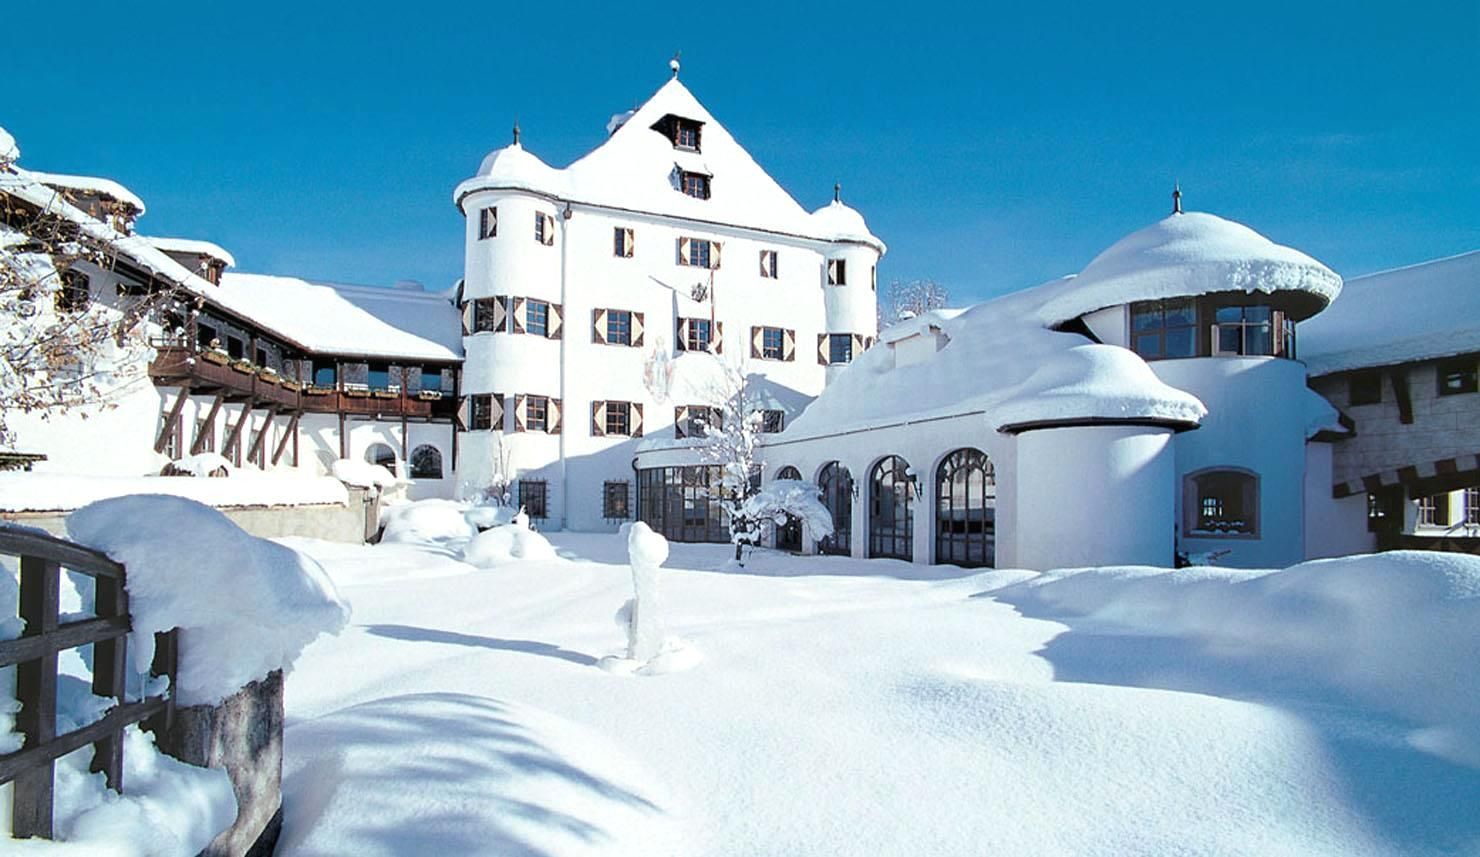 Meer info over Family Hotel Schloss Rosenegg  bij Wintertrex